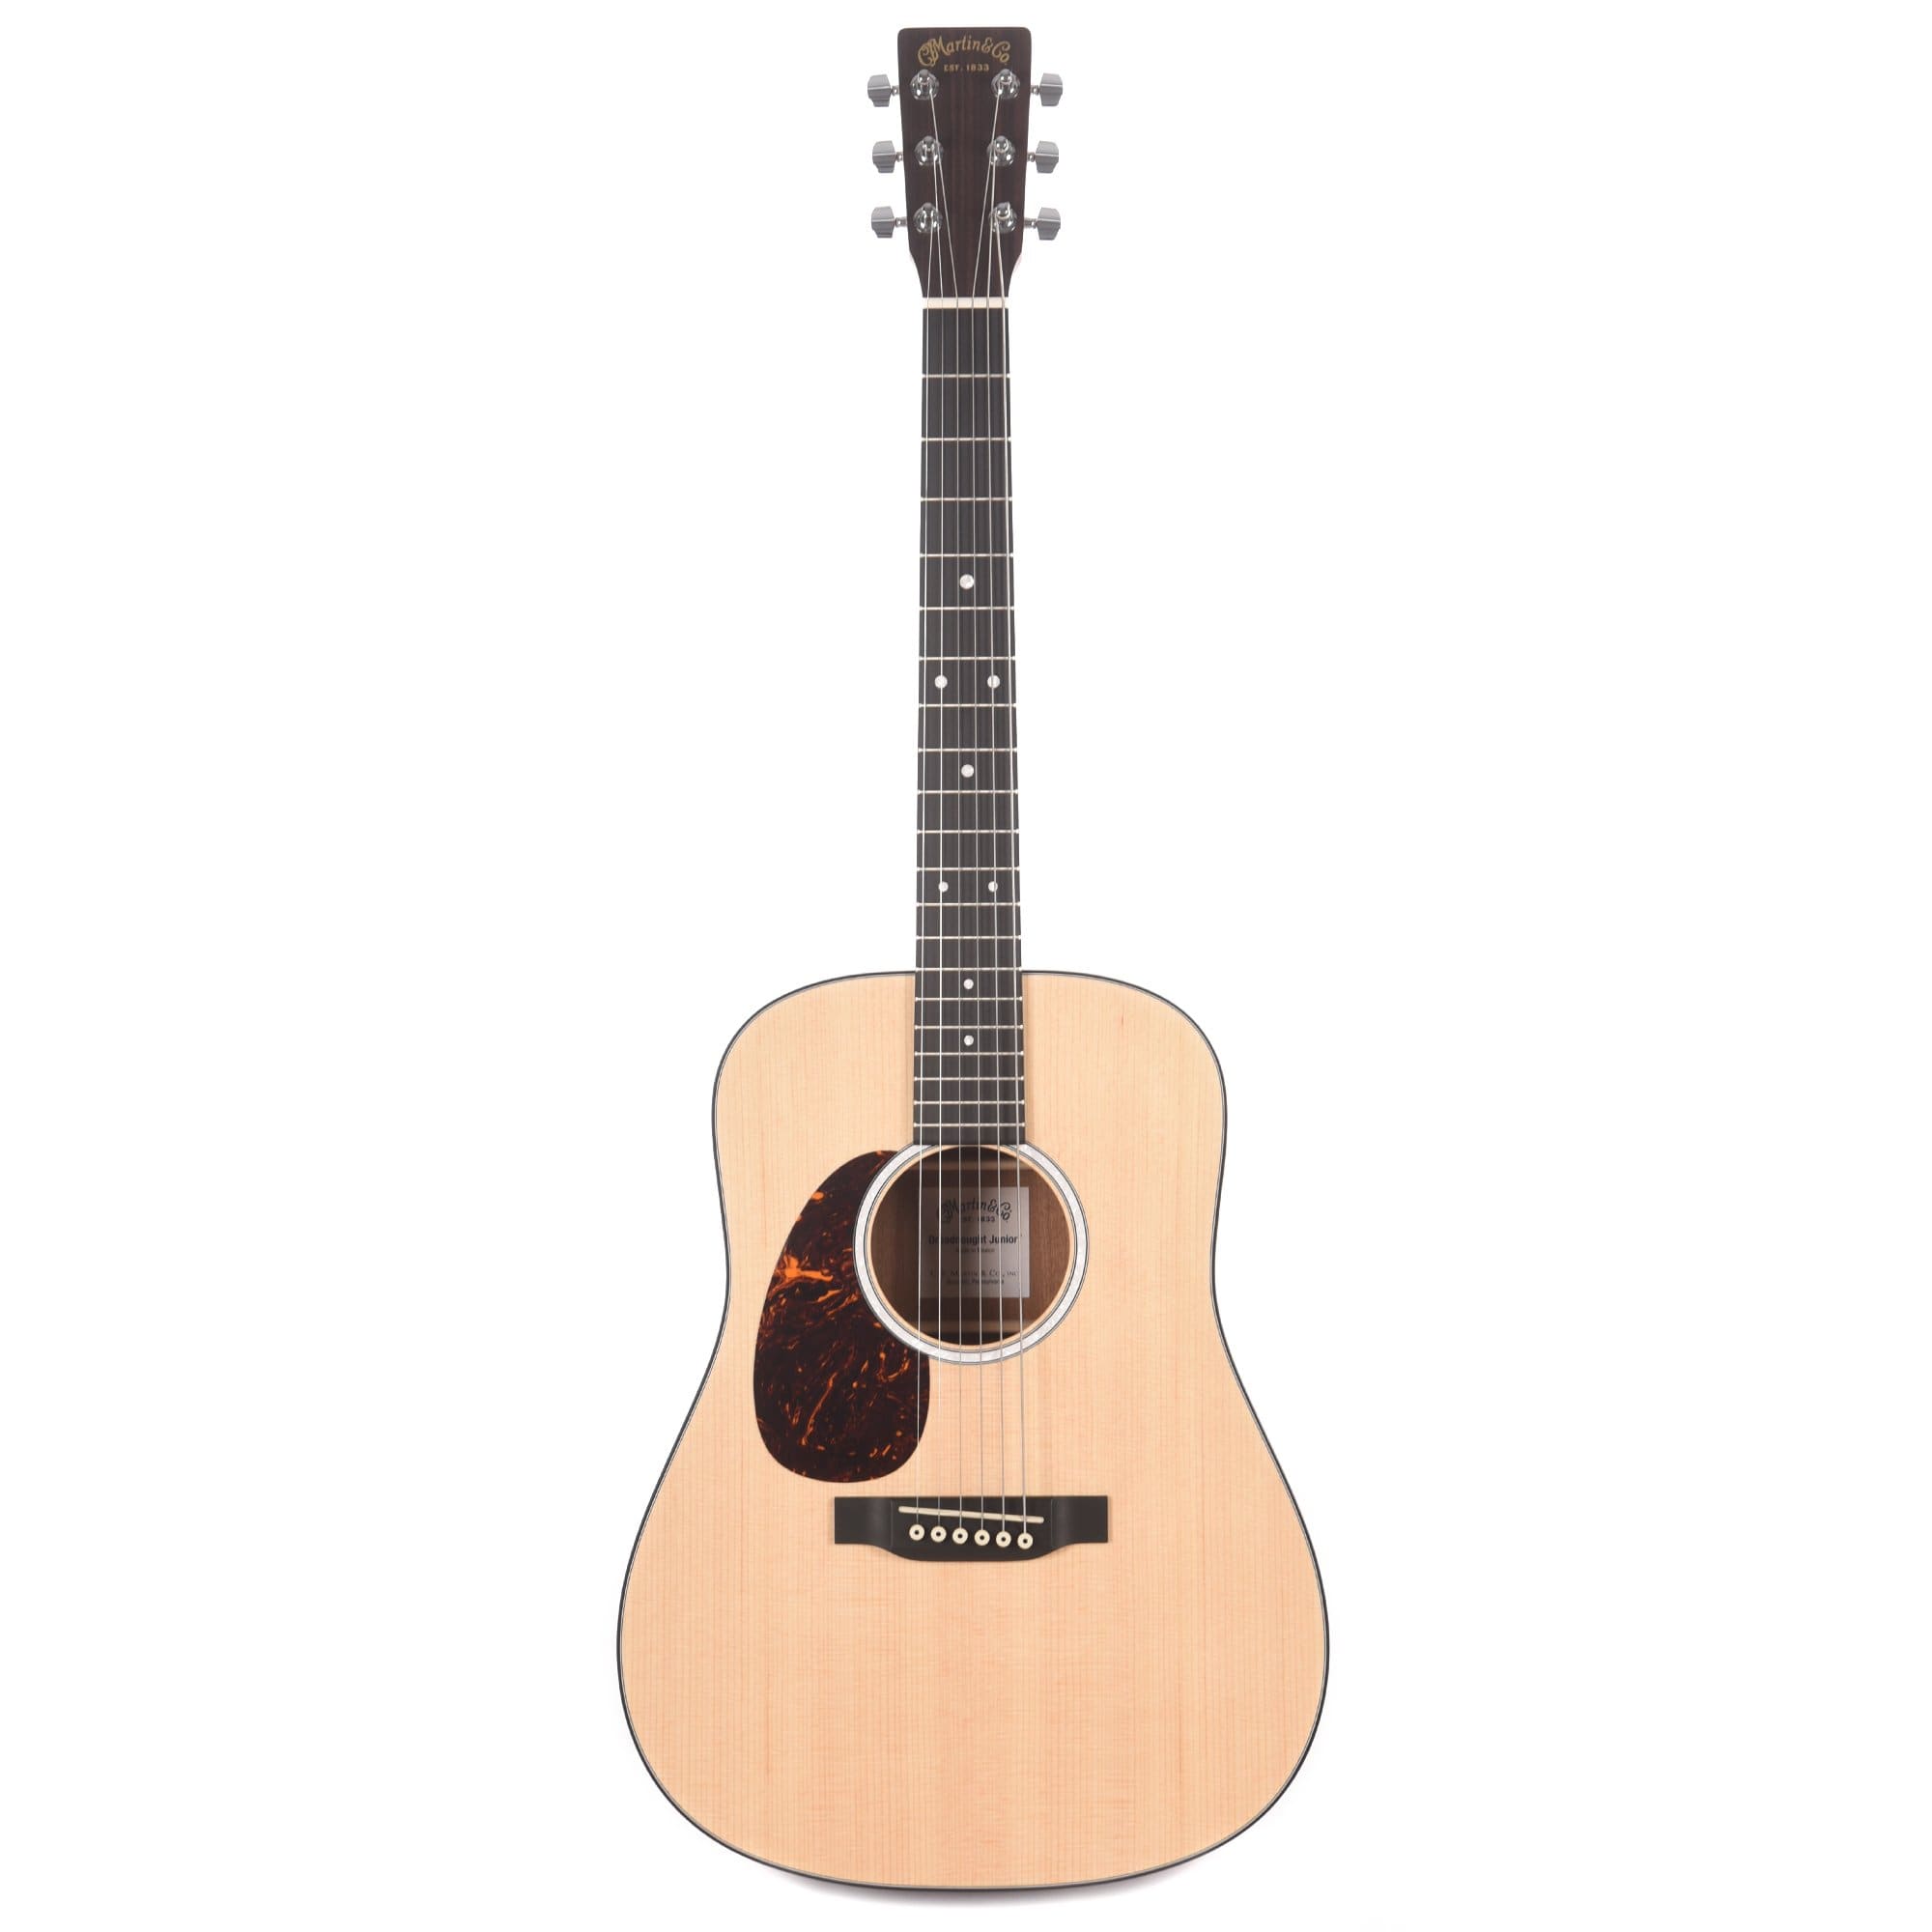 Martin D Jr-10 Satin Sitka/Sapele LEFTY Acoustic Guitars / Left-Handed